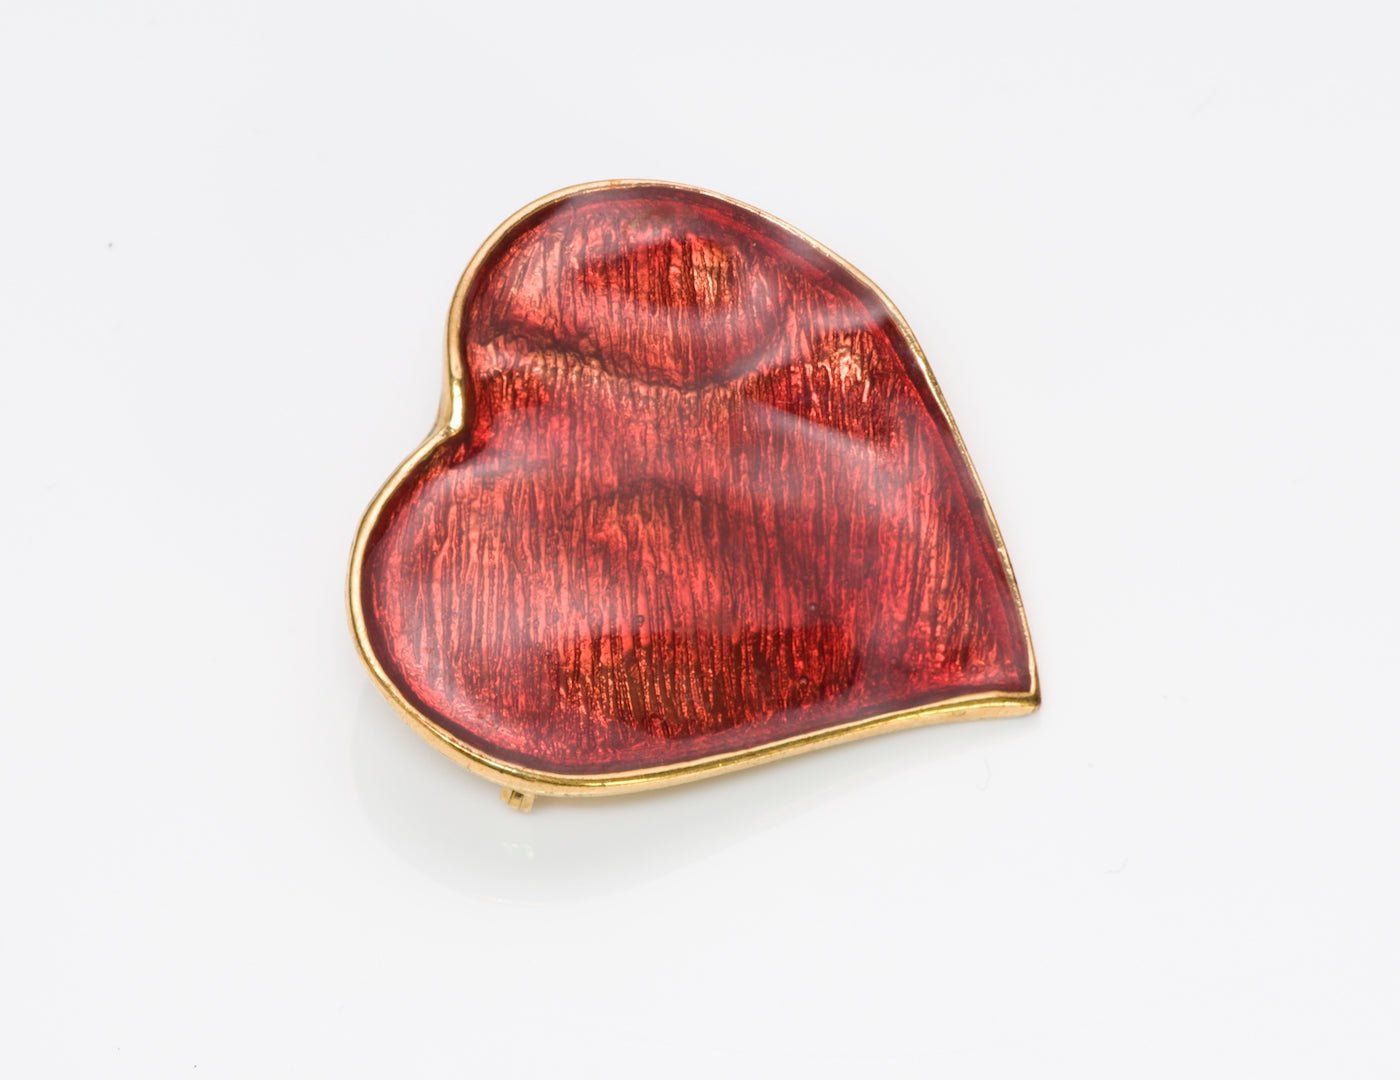 Yves Saint Laurent Heart Brooch Pendant